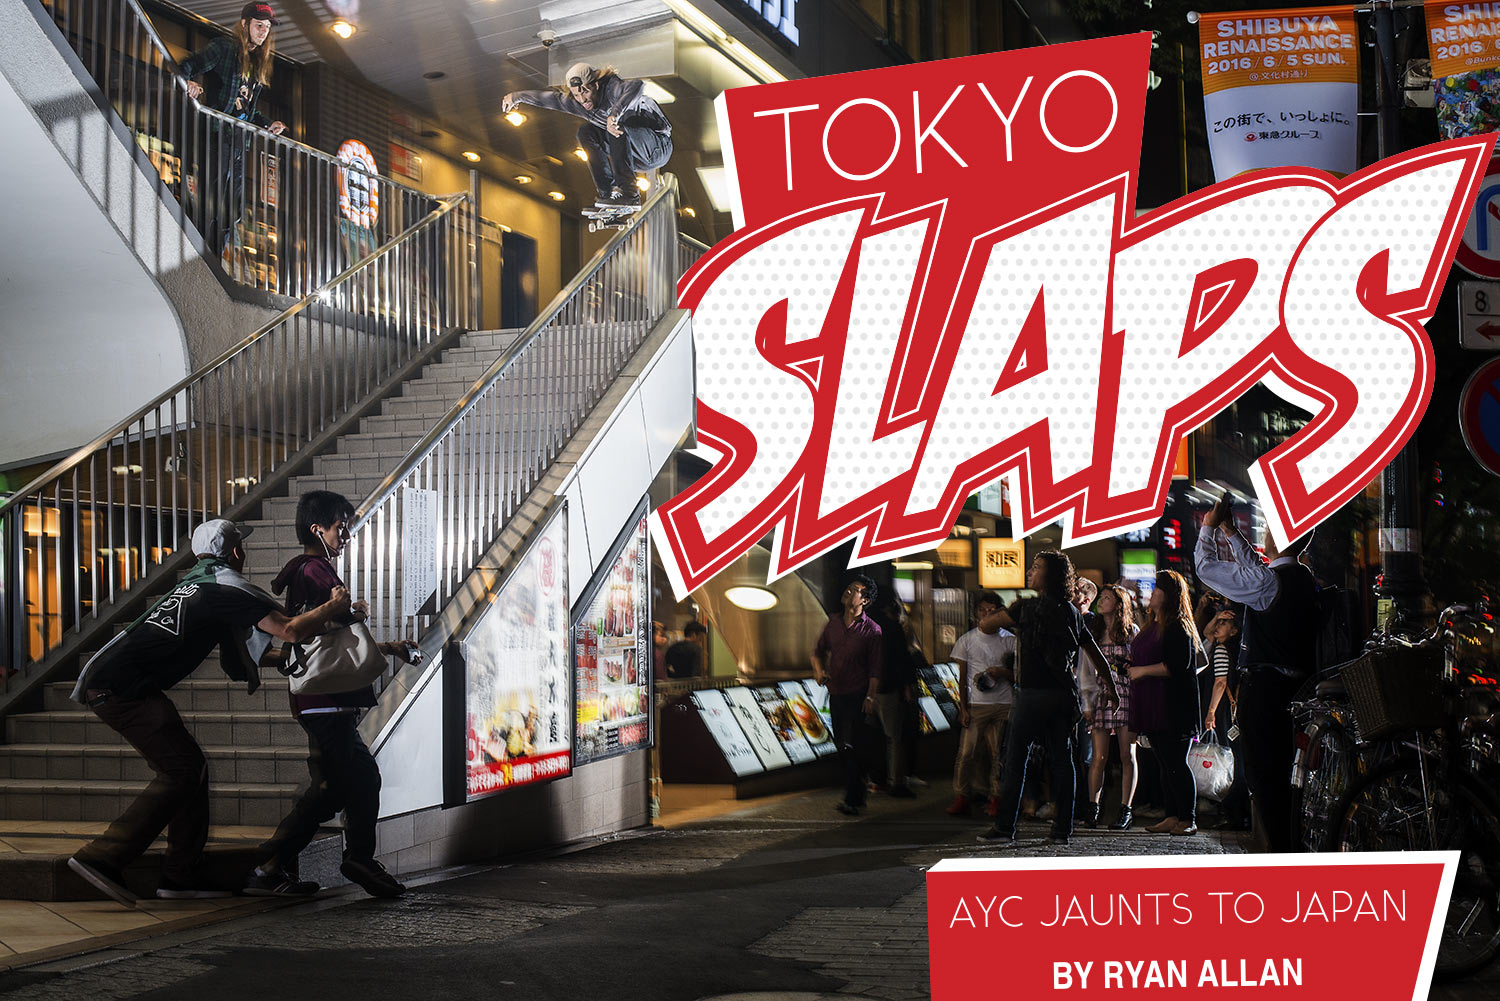 Ellers Tekstforfatter melodramatiske Thrasher Magazine - AYC's "Tokyo Slaps" Article